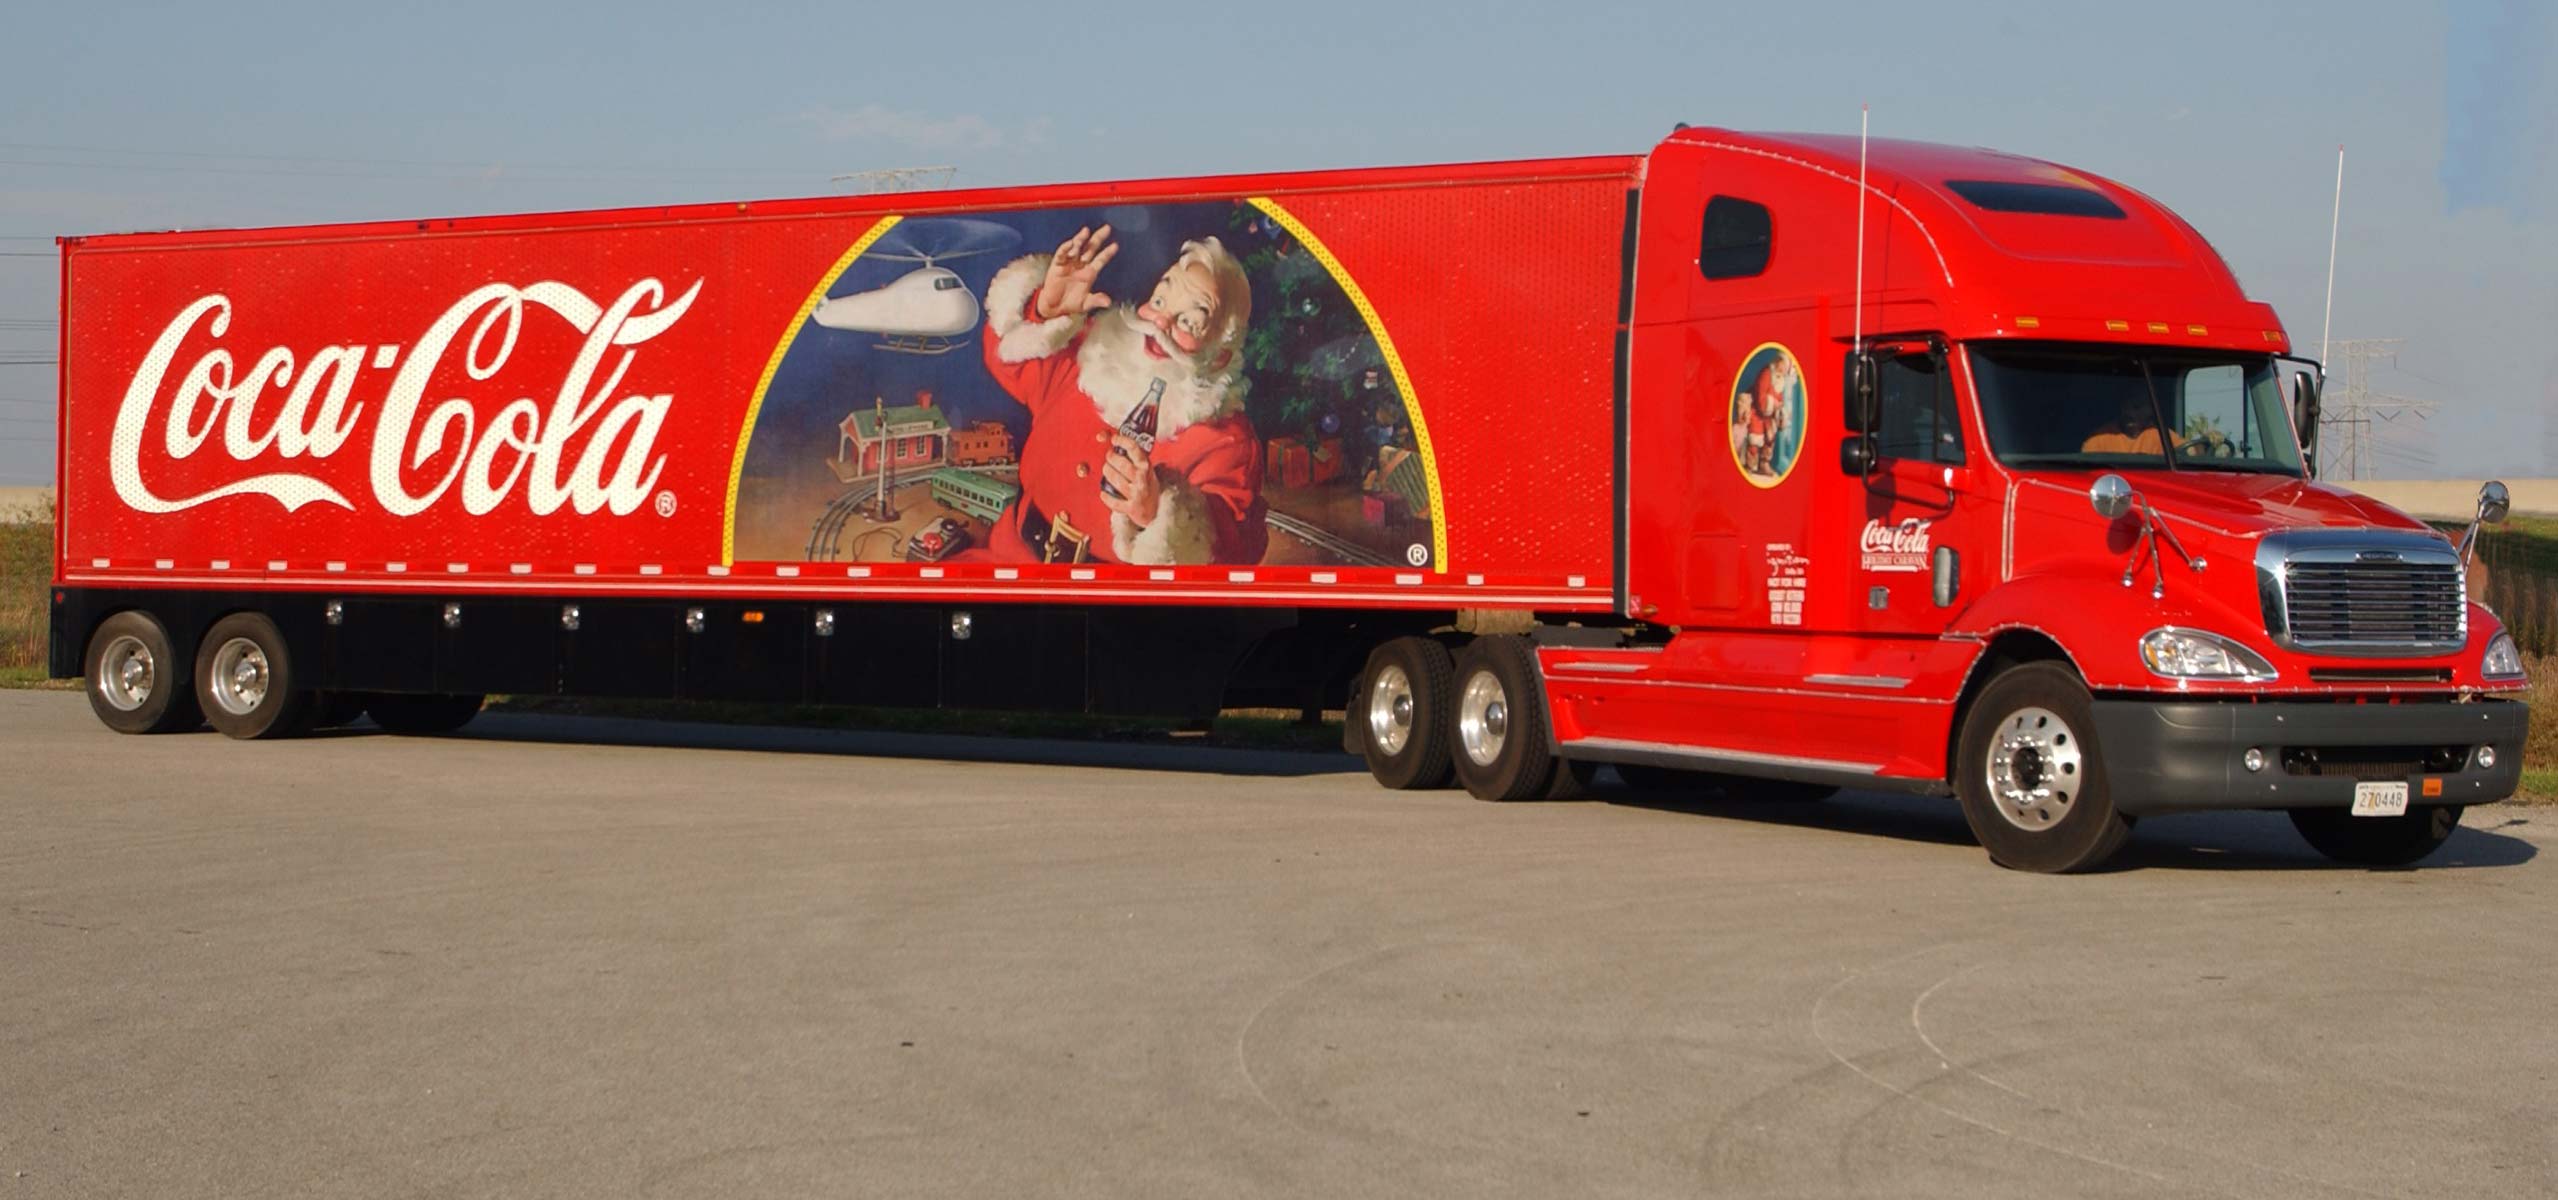 Coca-Cola Holiday Caravan